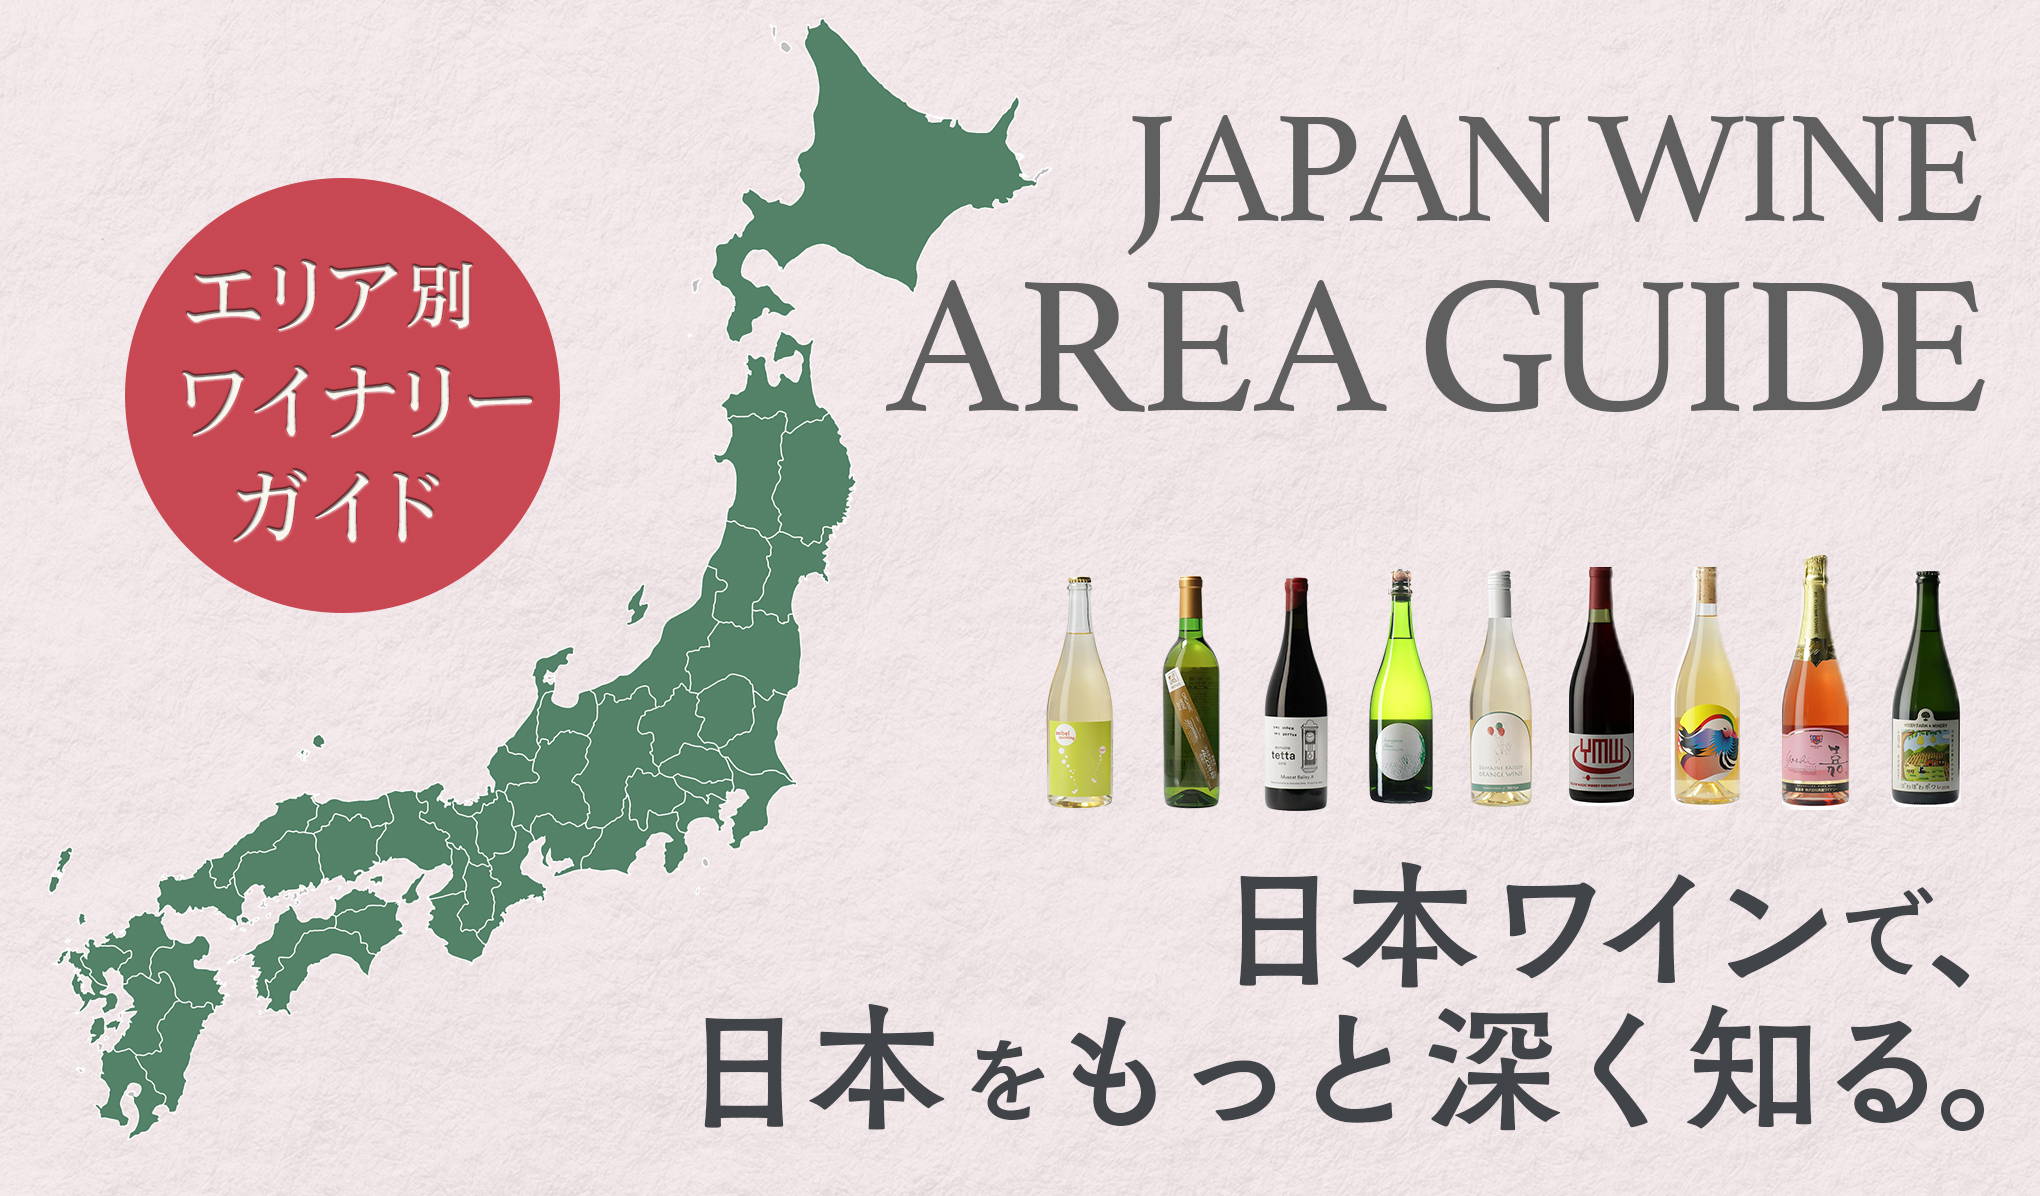 日本ワインで、日本をもっと深く知る。 エリア別ワイナリーガイド